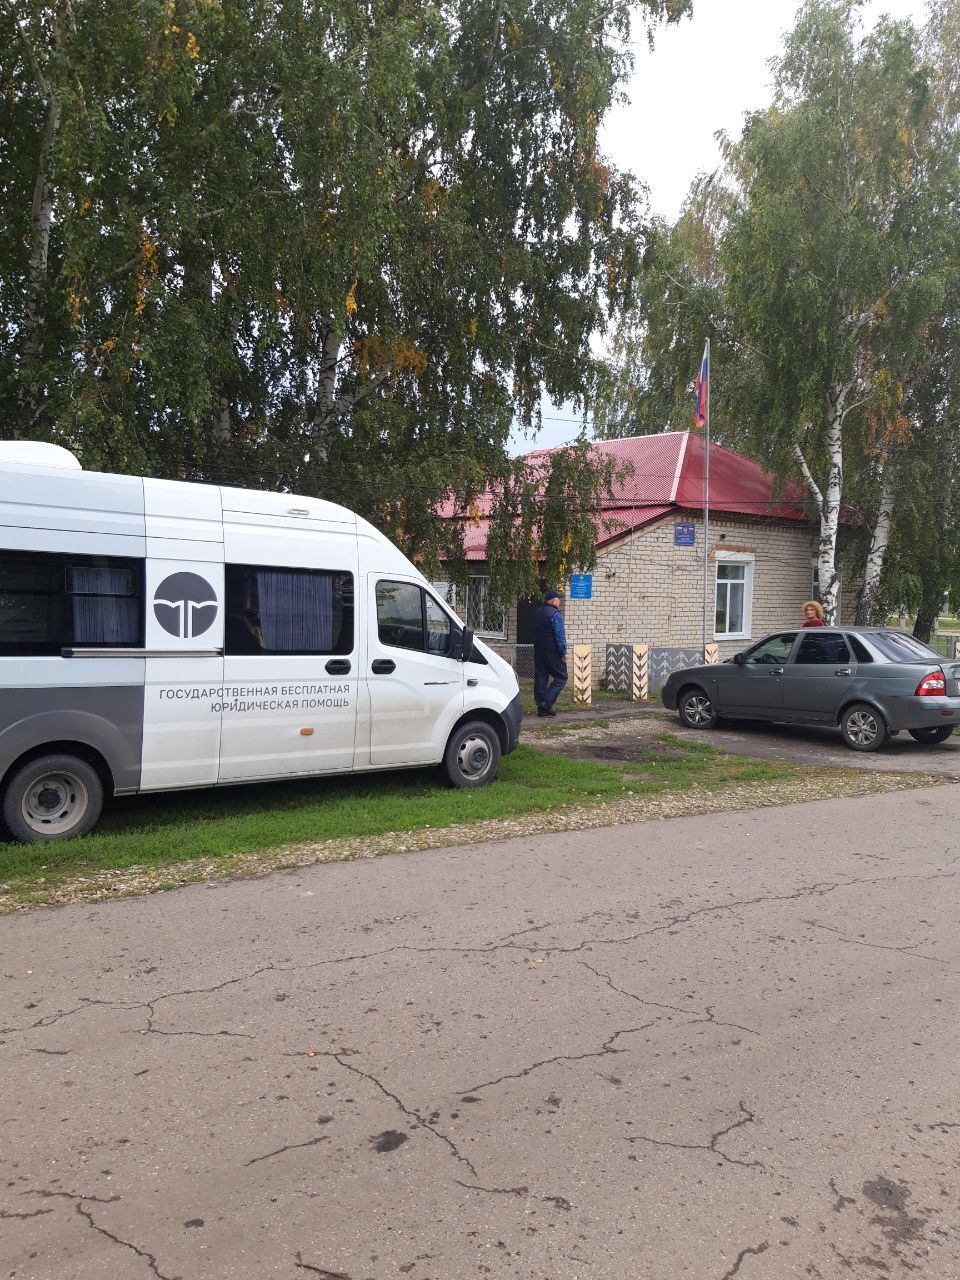 Доступная бесплатная юрпомощь для жителей отдалённых населённых пунктов Ульяновской области